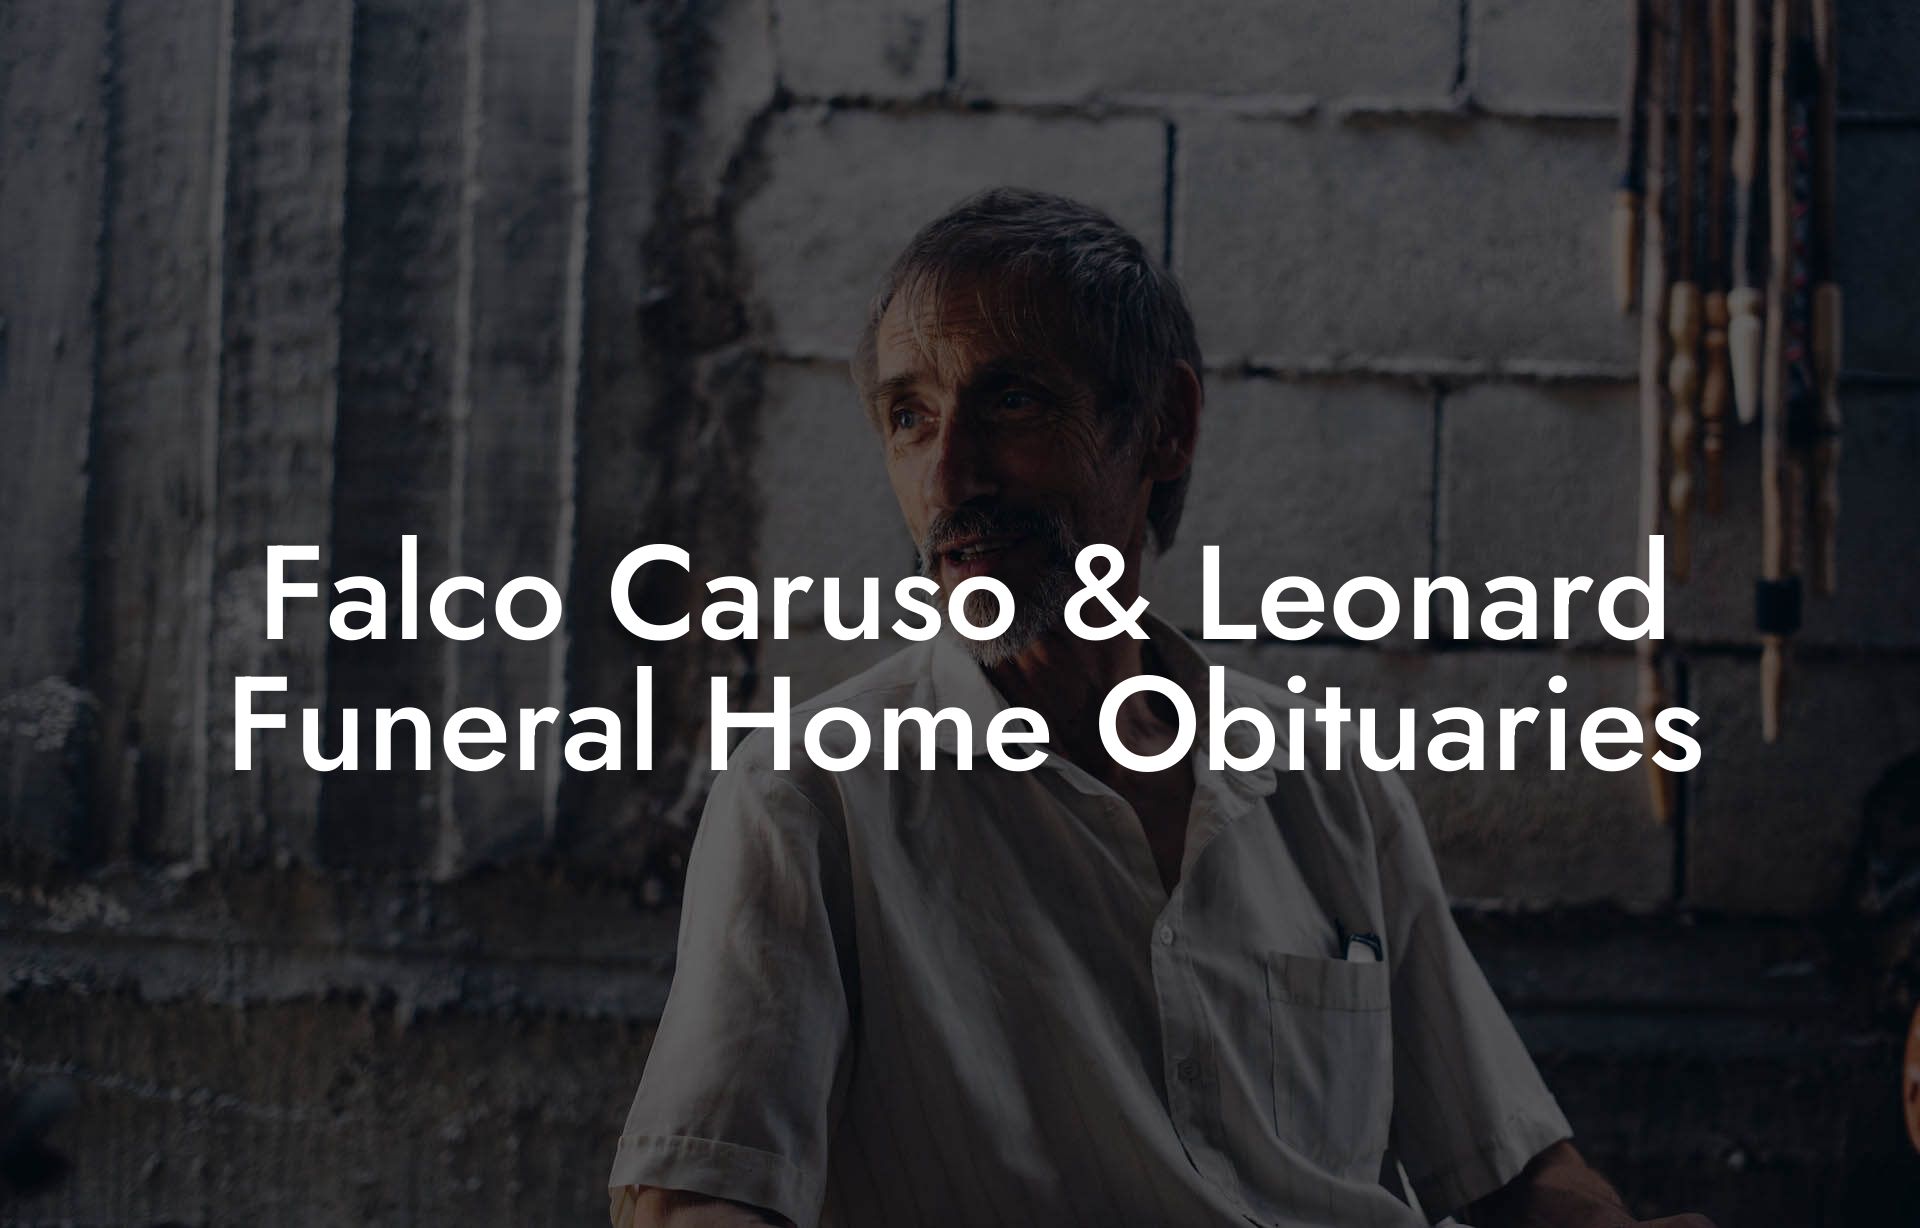 Falco Caruso & Leonard Funeral Home Obituaries